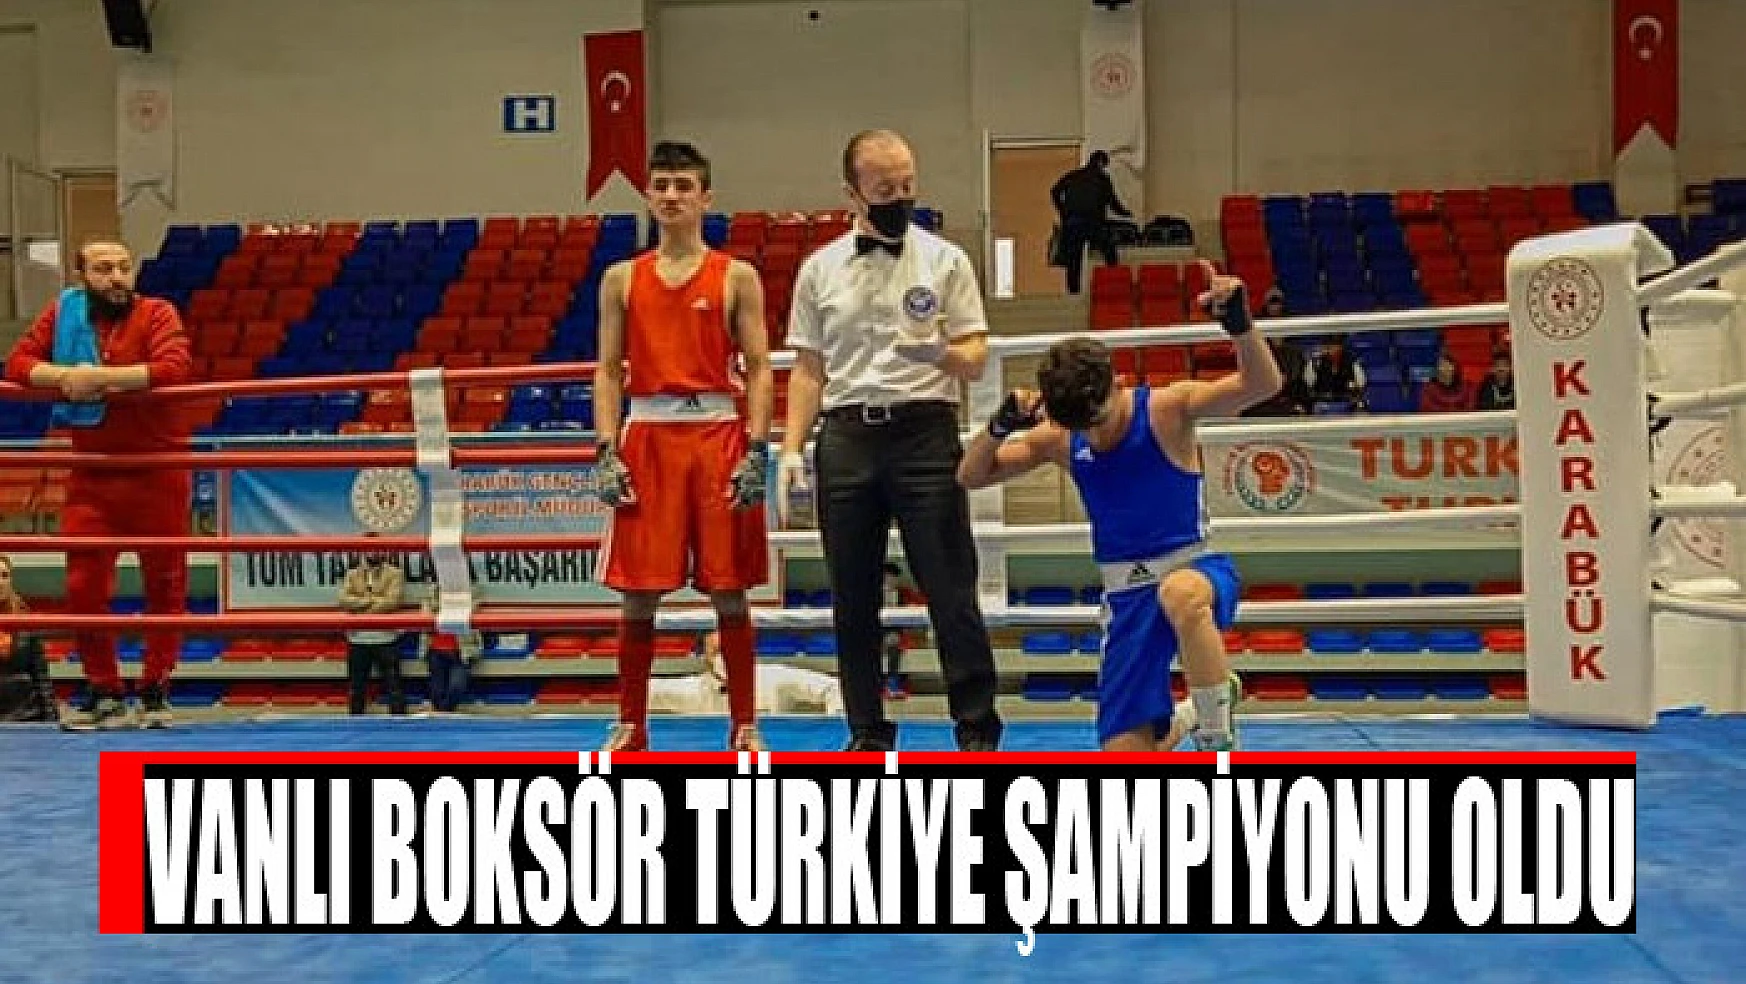 Vanlı boksör Türkiye şampiyonu oldu